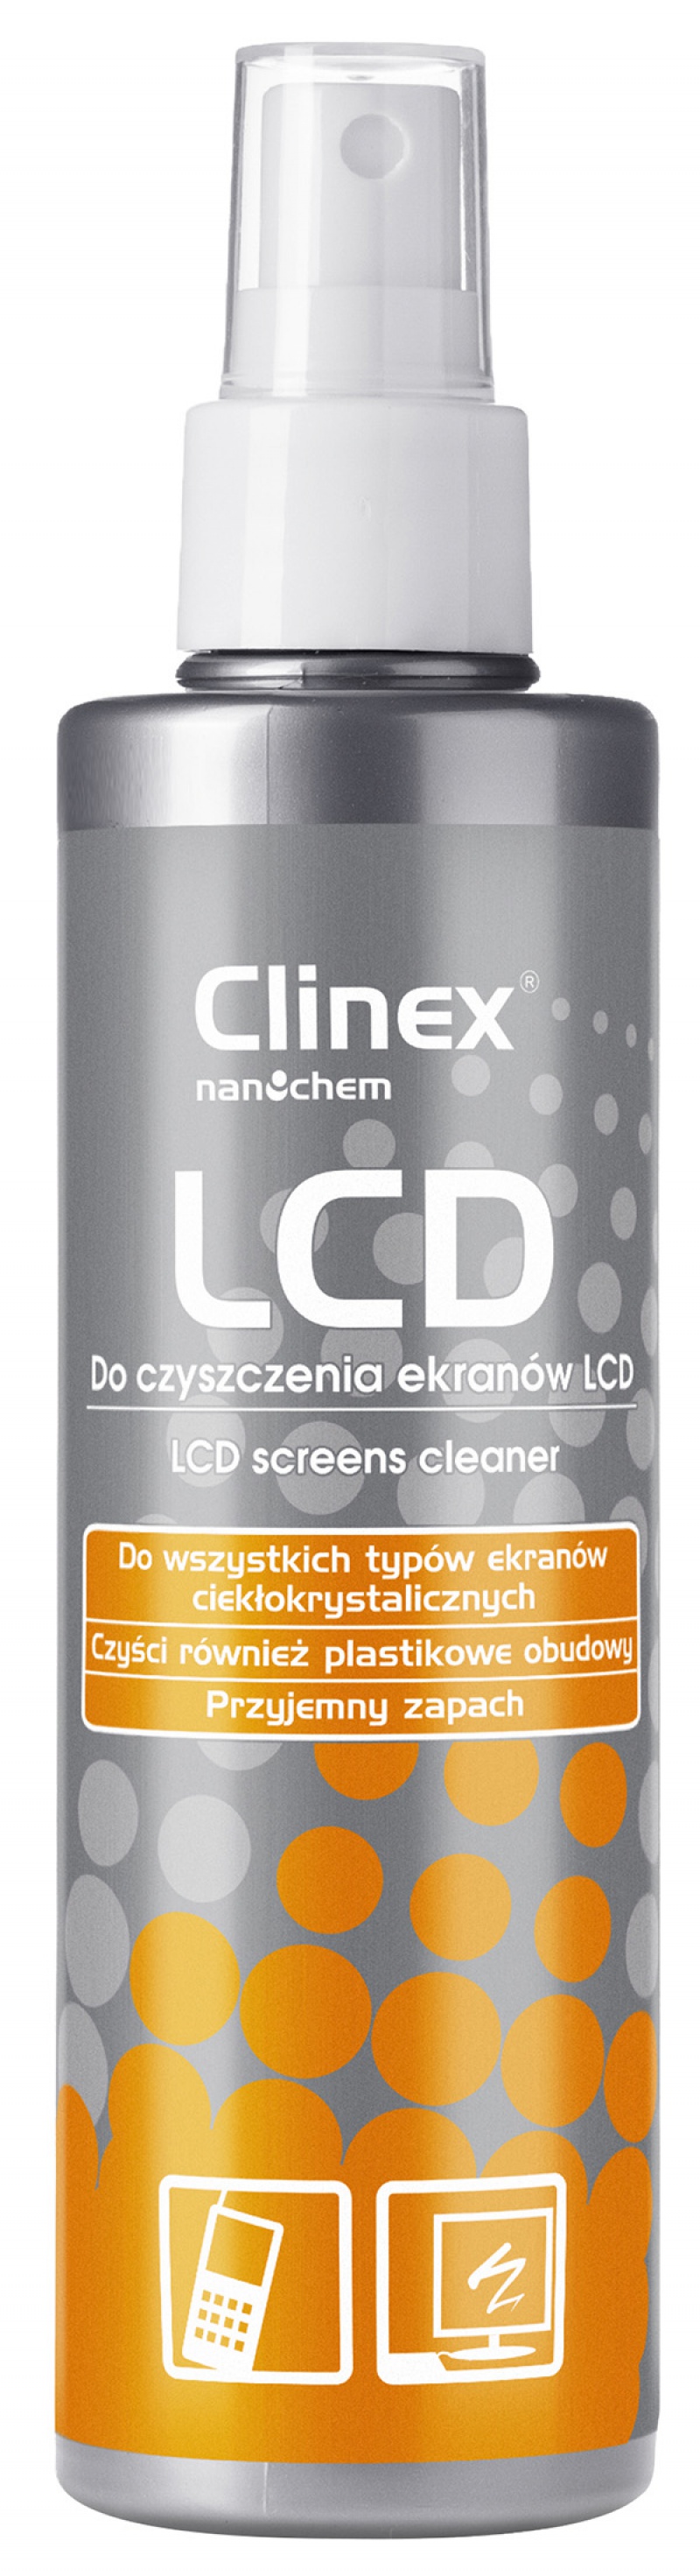 Spray CLINEX LCD 200ml, do czyszczenia ekranów